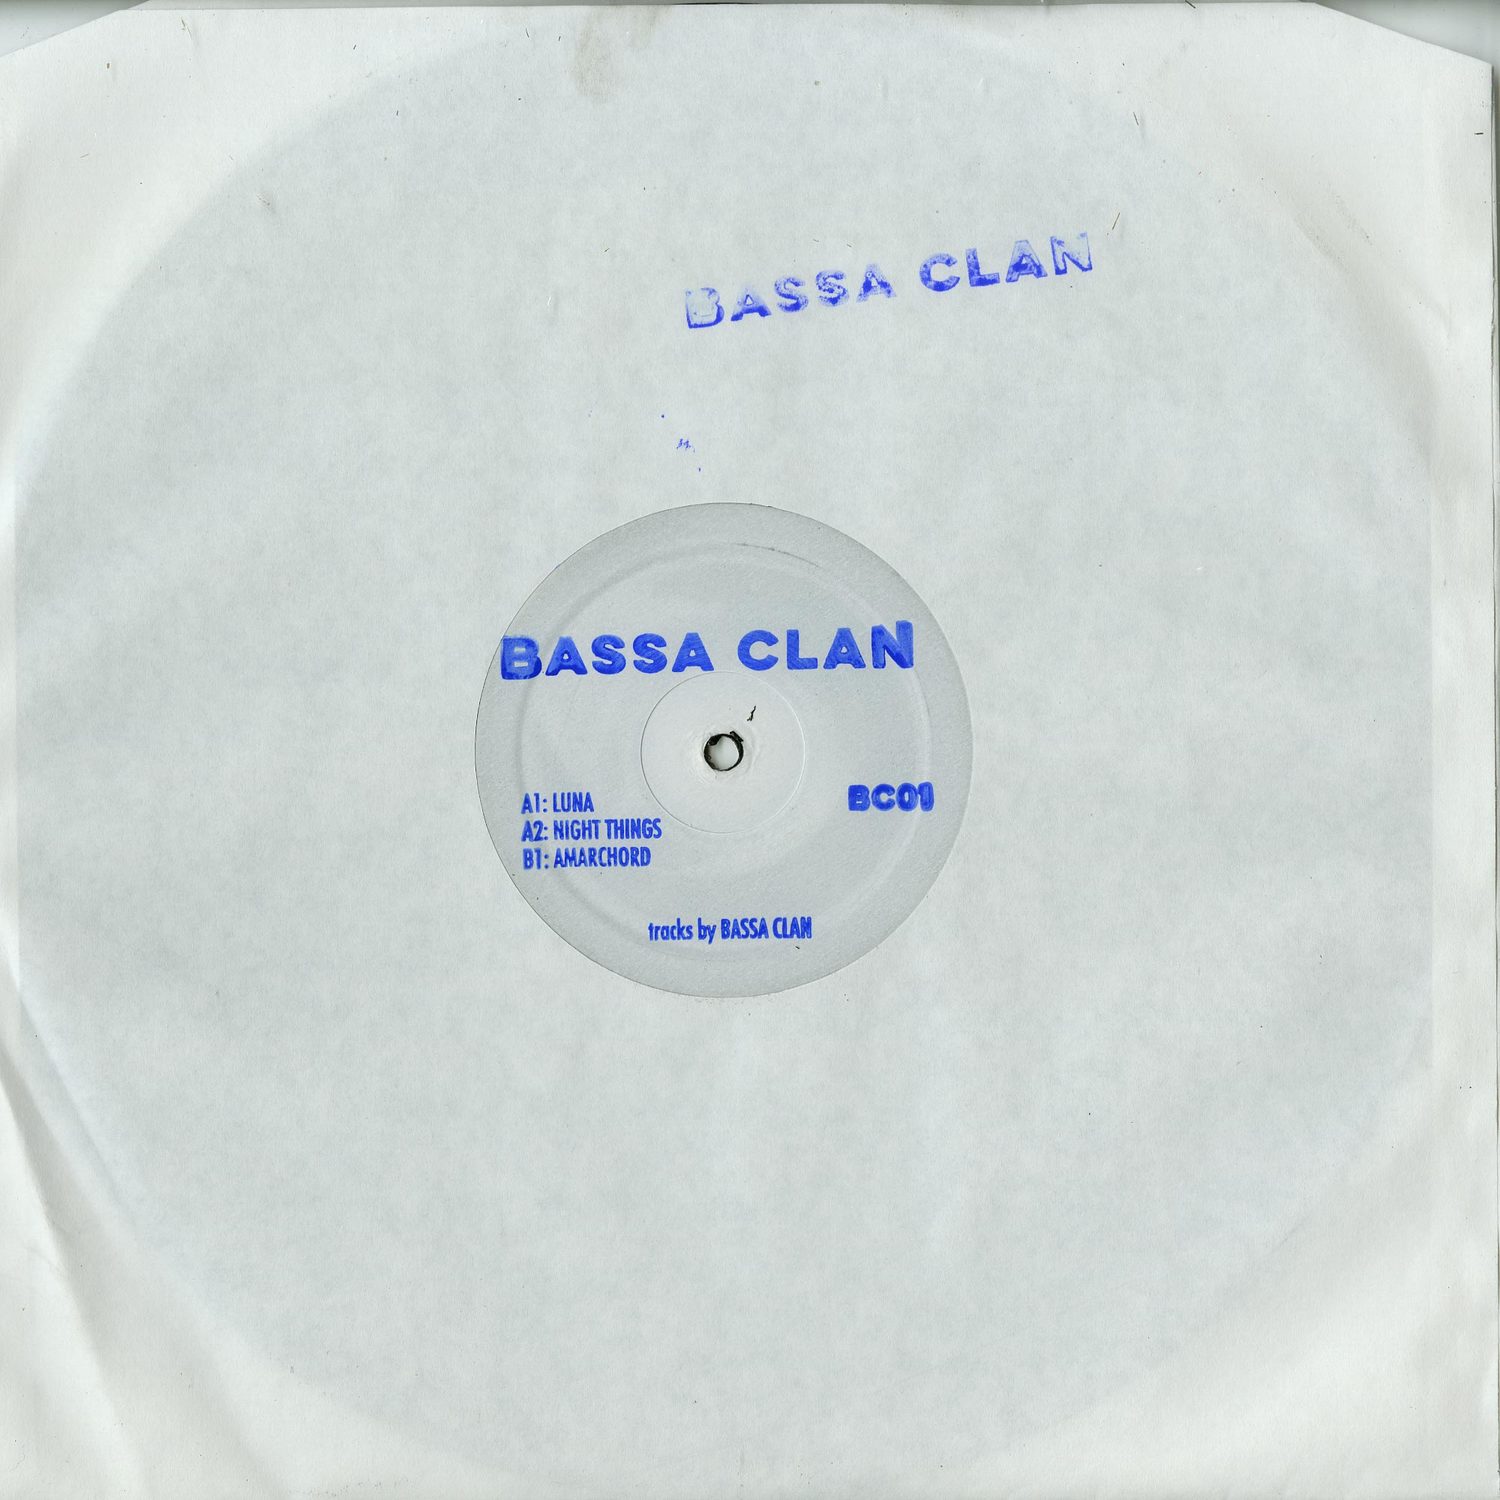 Bassa Clan - BASSA CLAN 01 